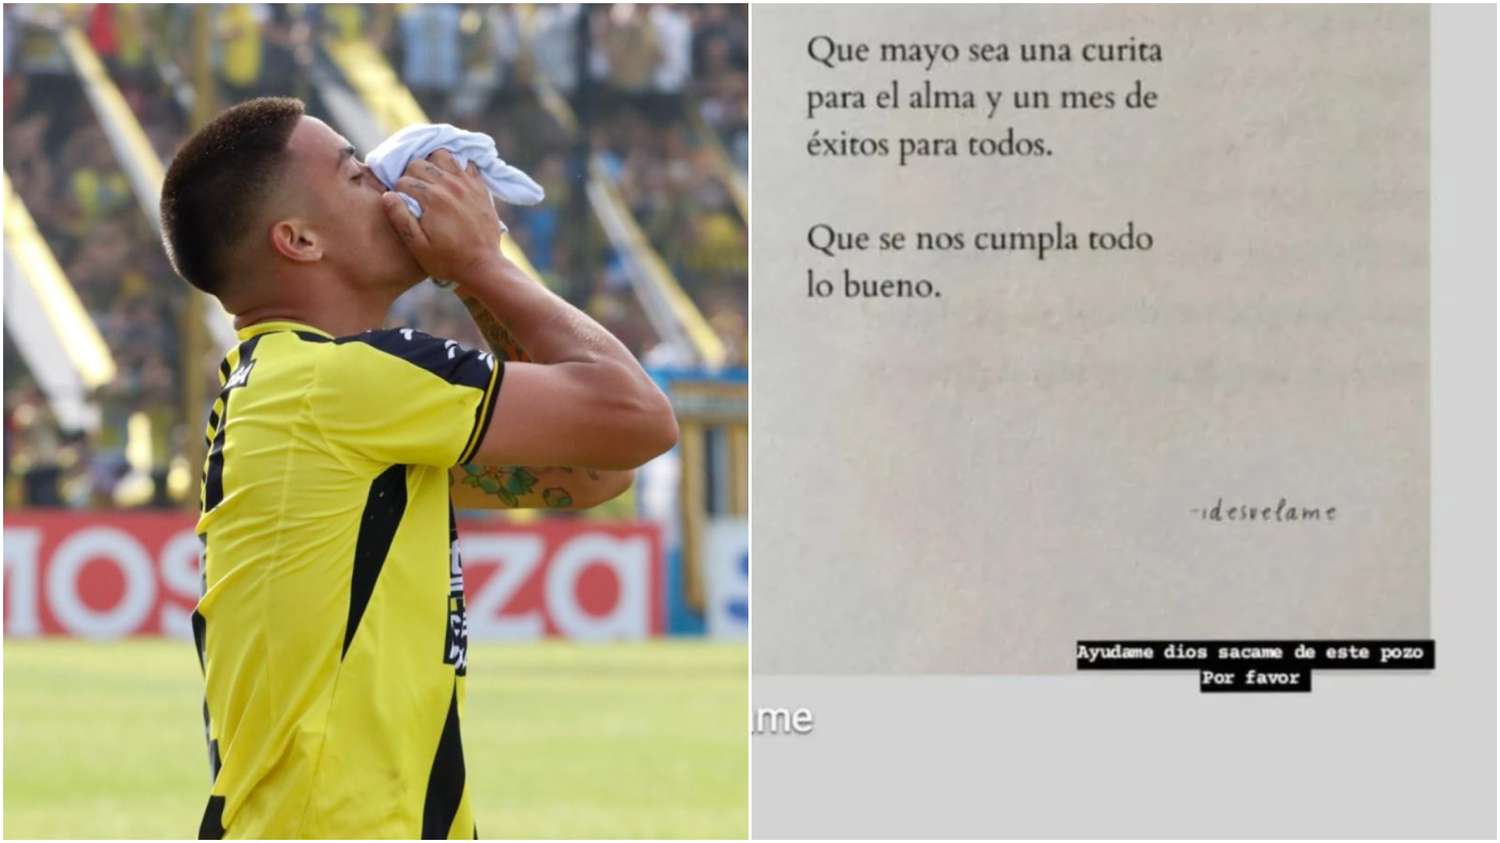 El desesperado pedido de ayuda de Brian Fernández, futbolista de Almirante Brown: "Ayudame Dios, sácame de este pozo"